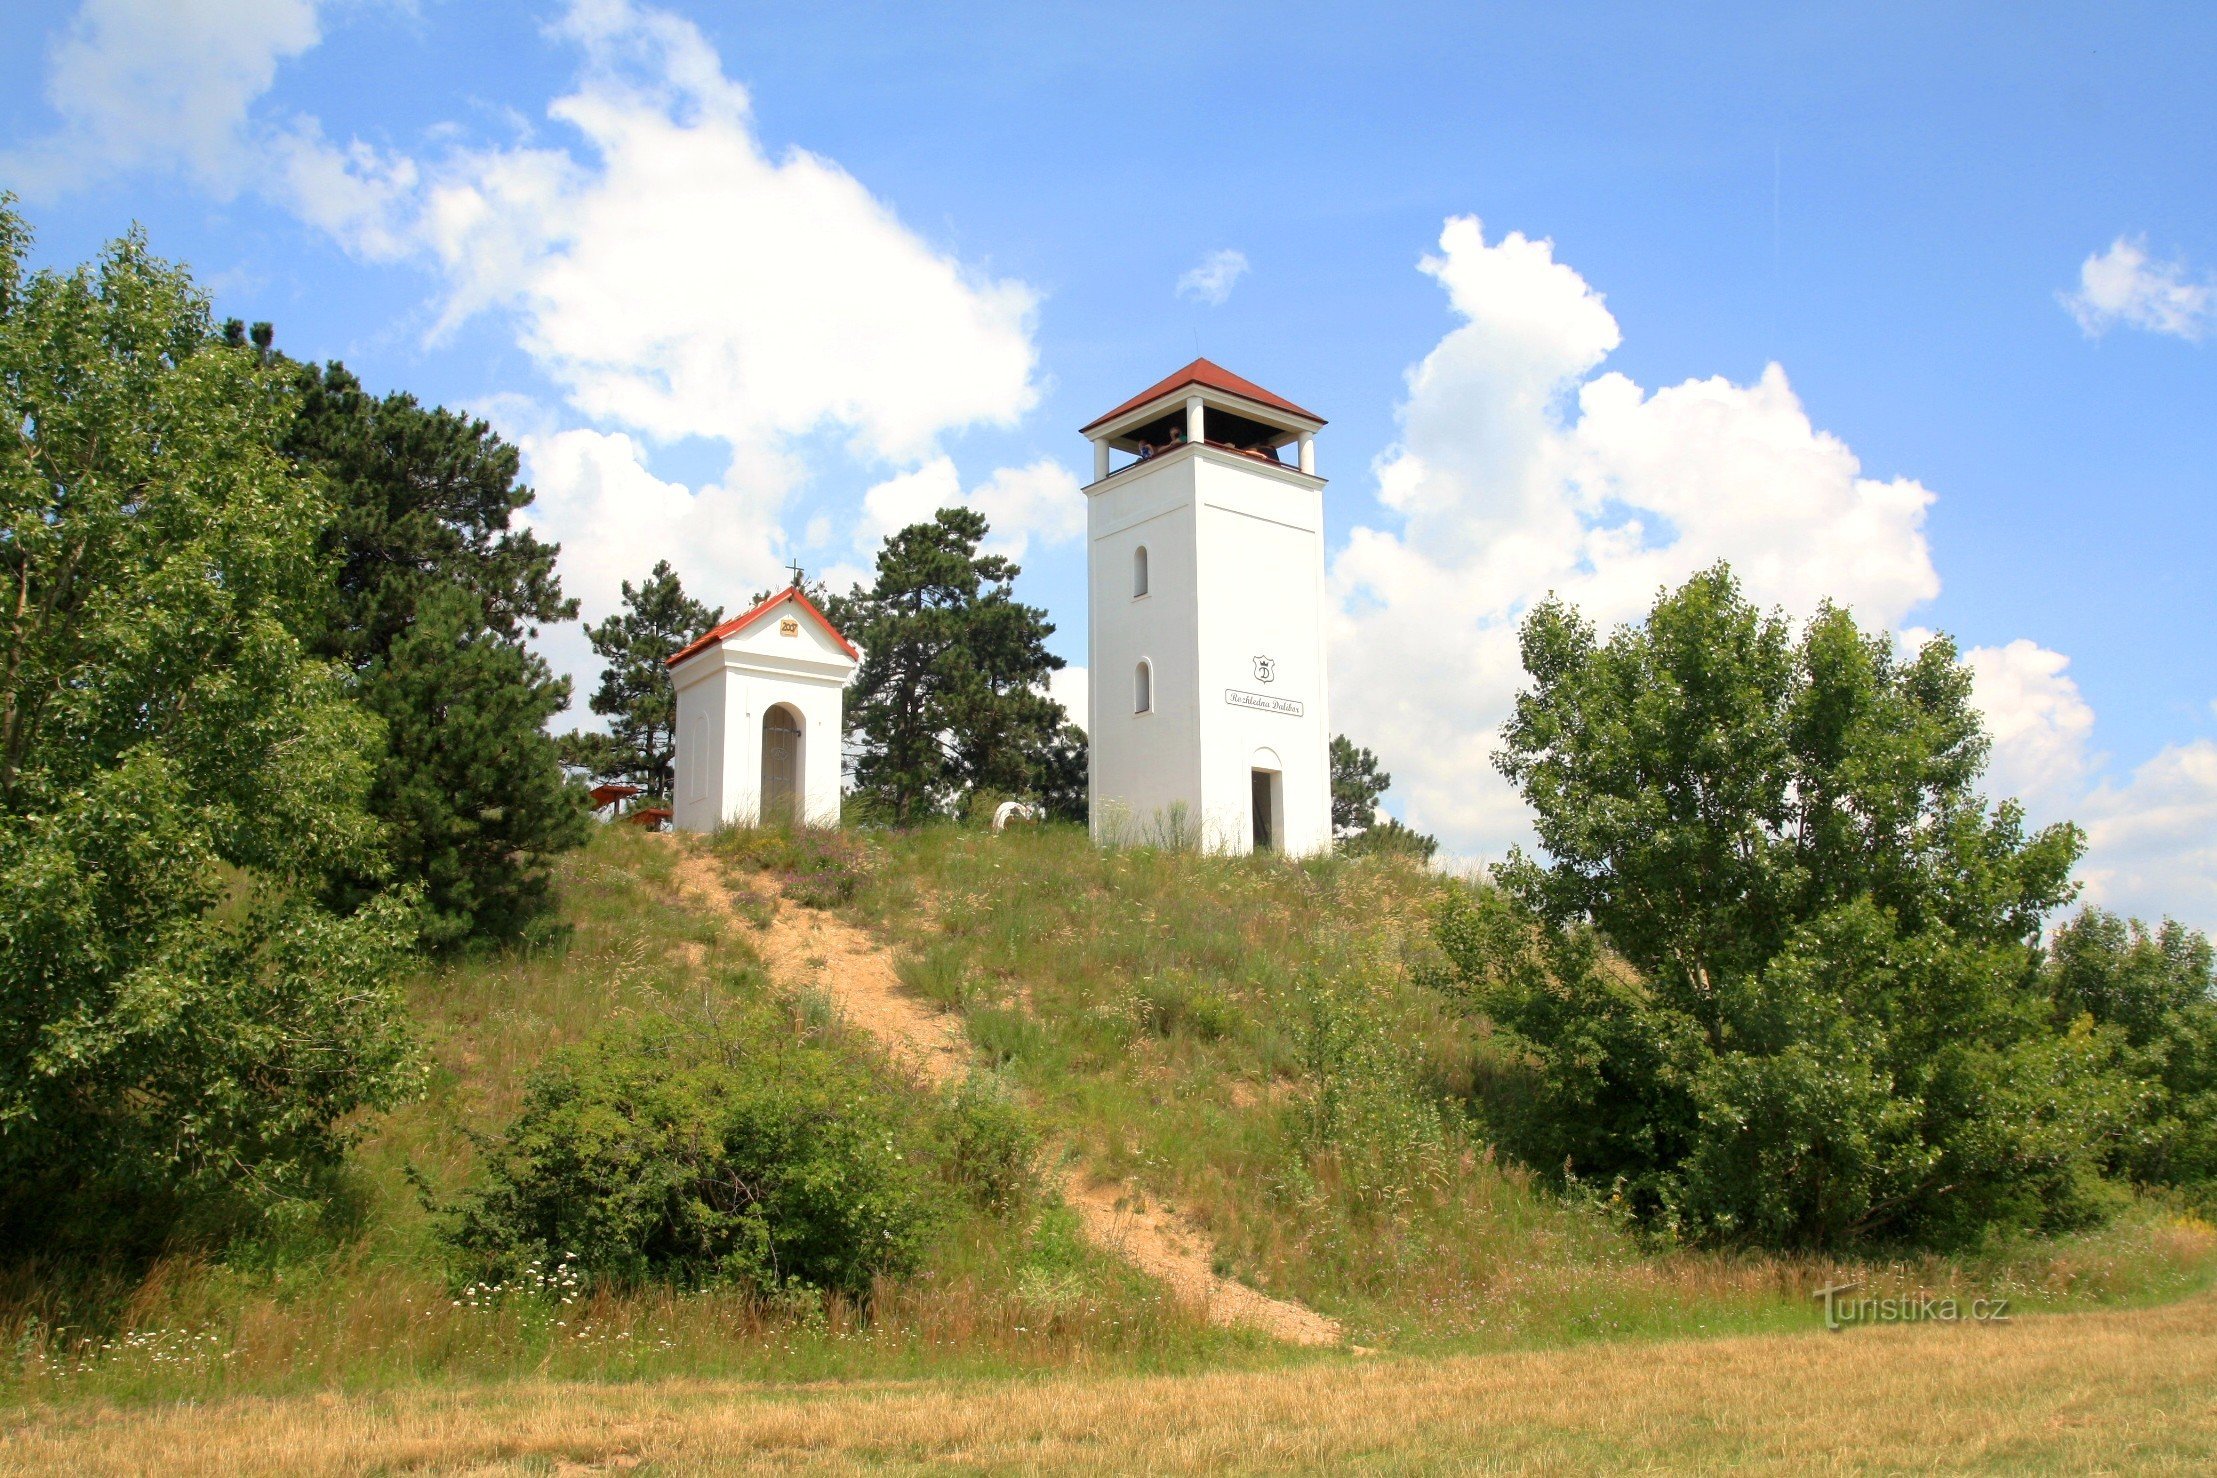 Vârful Calvarului cu capela Sf. Urbana și turnul de belvedere Dalibor